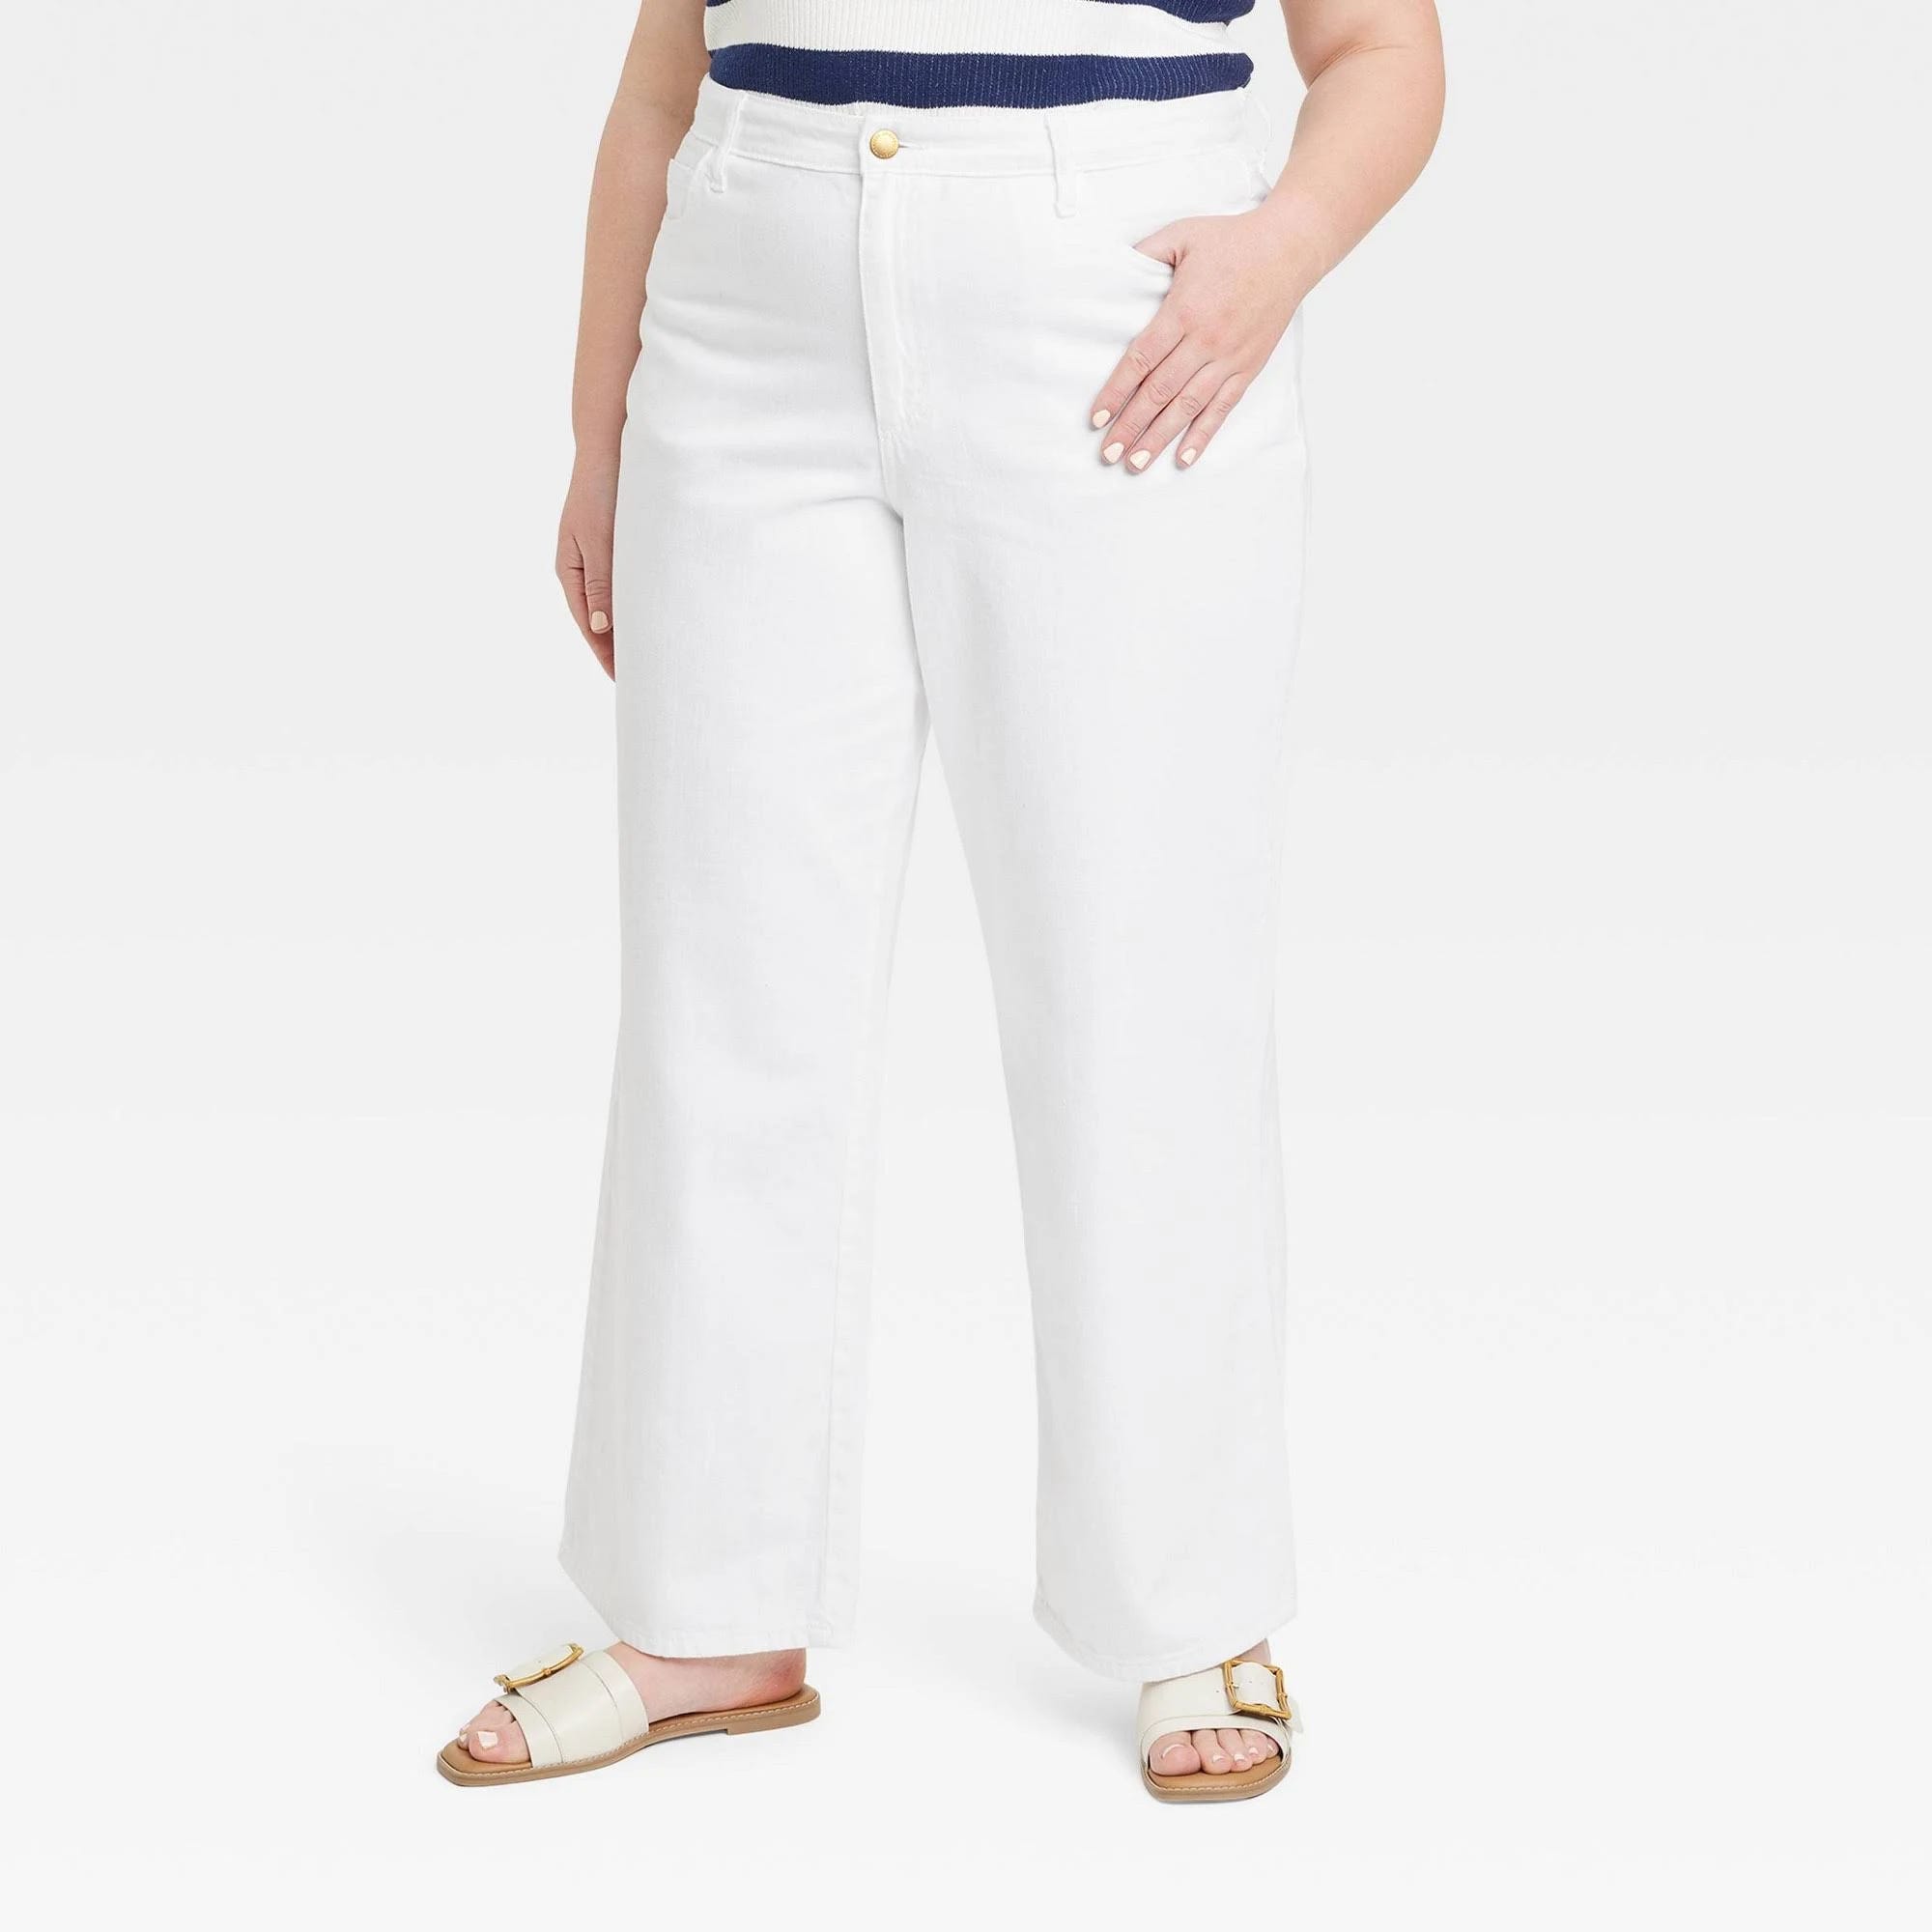 Elegant White Wide-Leg High-Rise Jeans for Women | Image